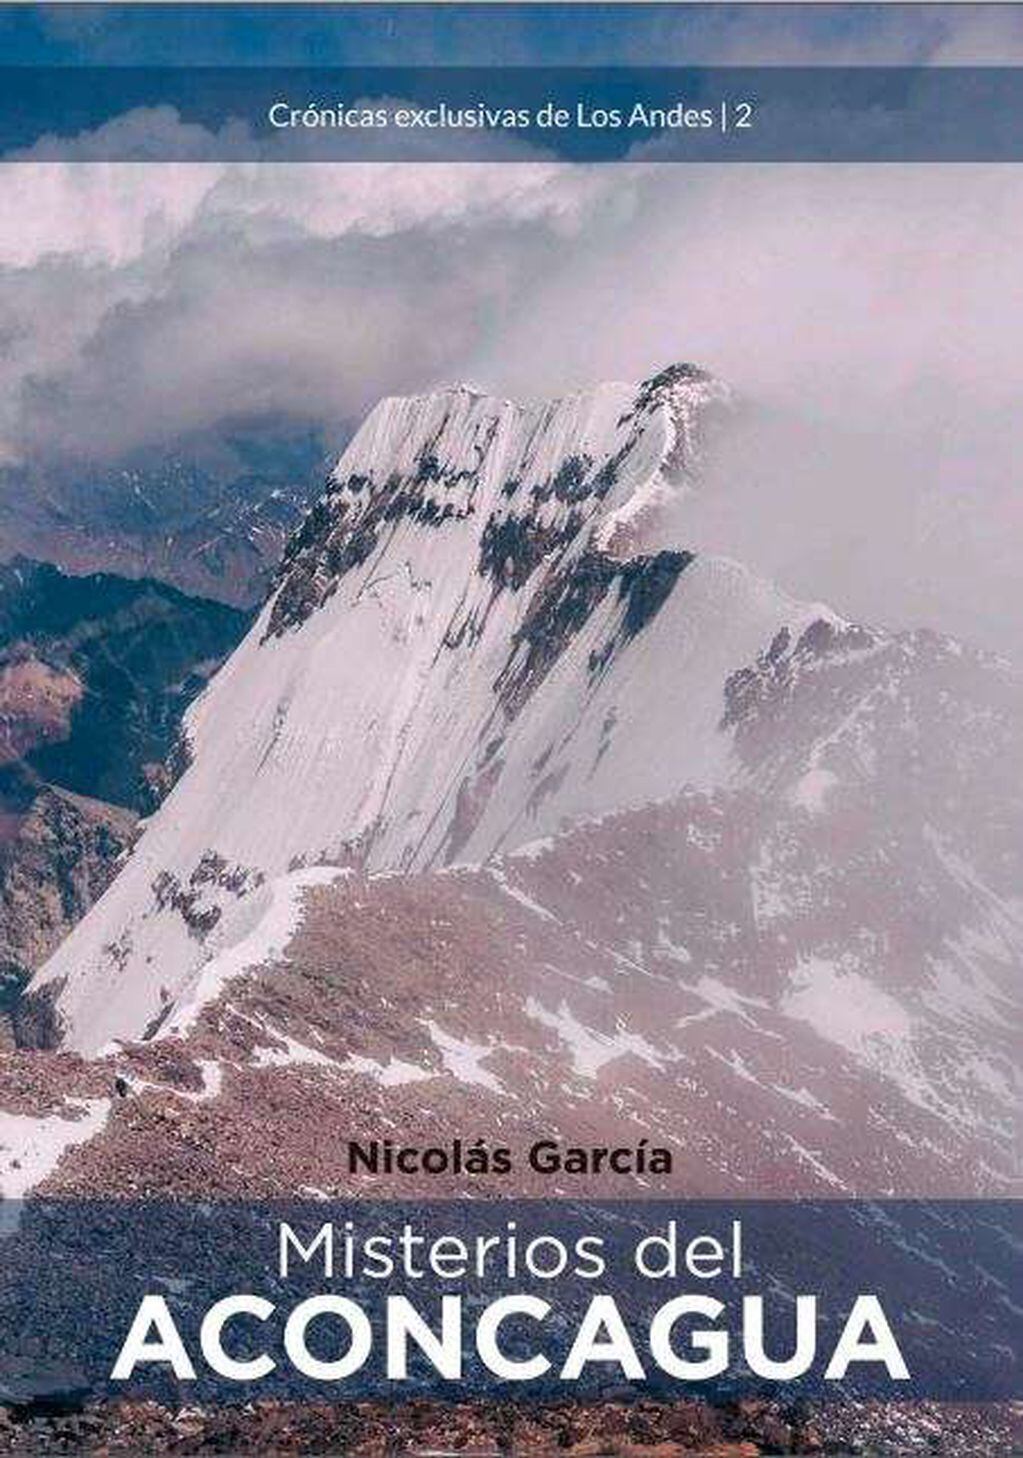 
Misterios del Aconcagua, de Nicolás García
